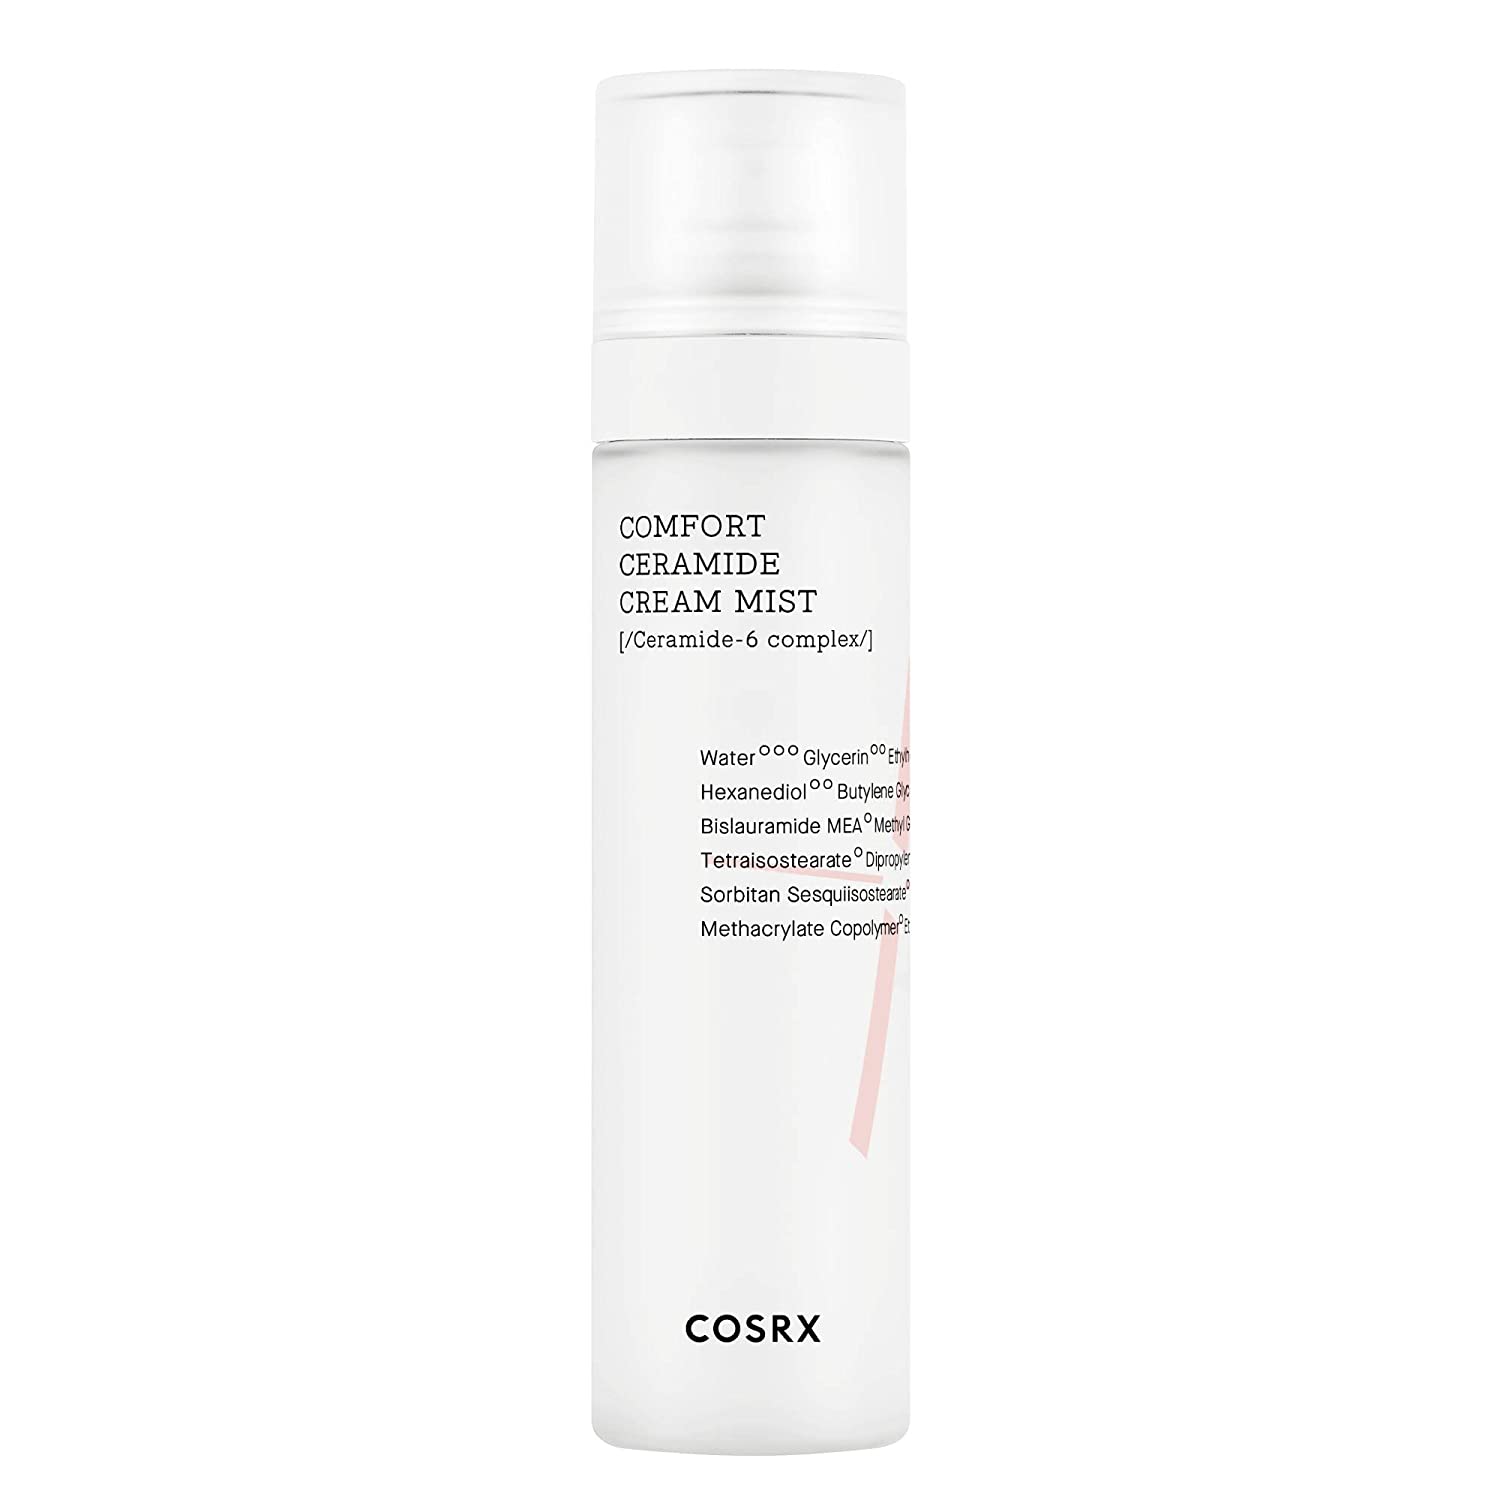 Cosrx Balancium Comfort Ceramide Cream Mist Beauty Cosrx   